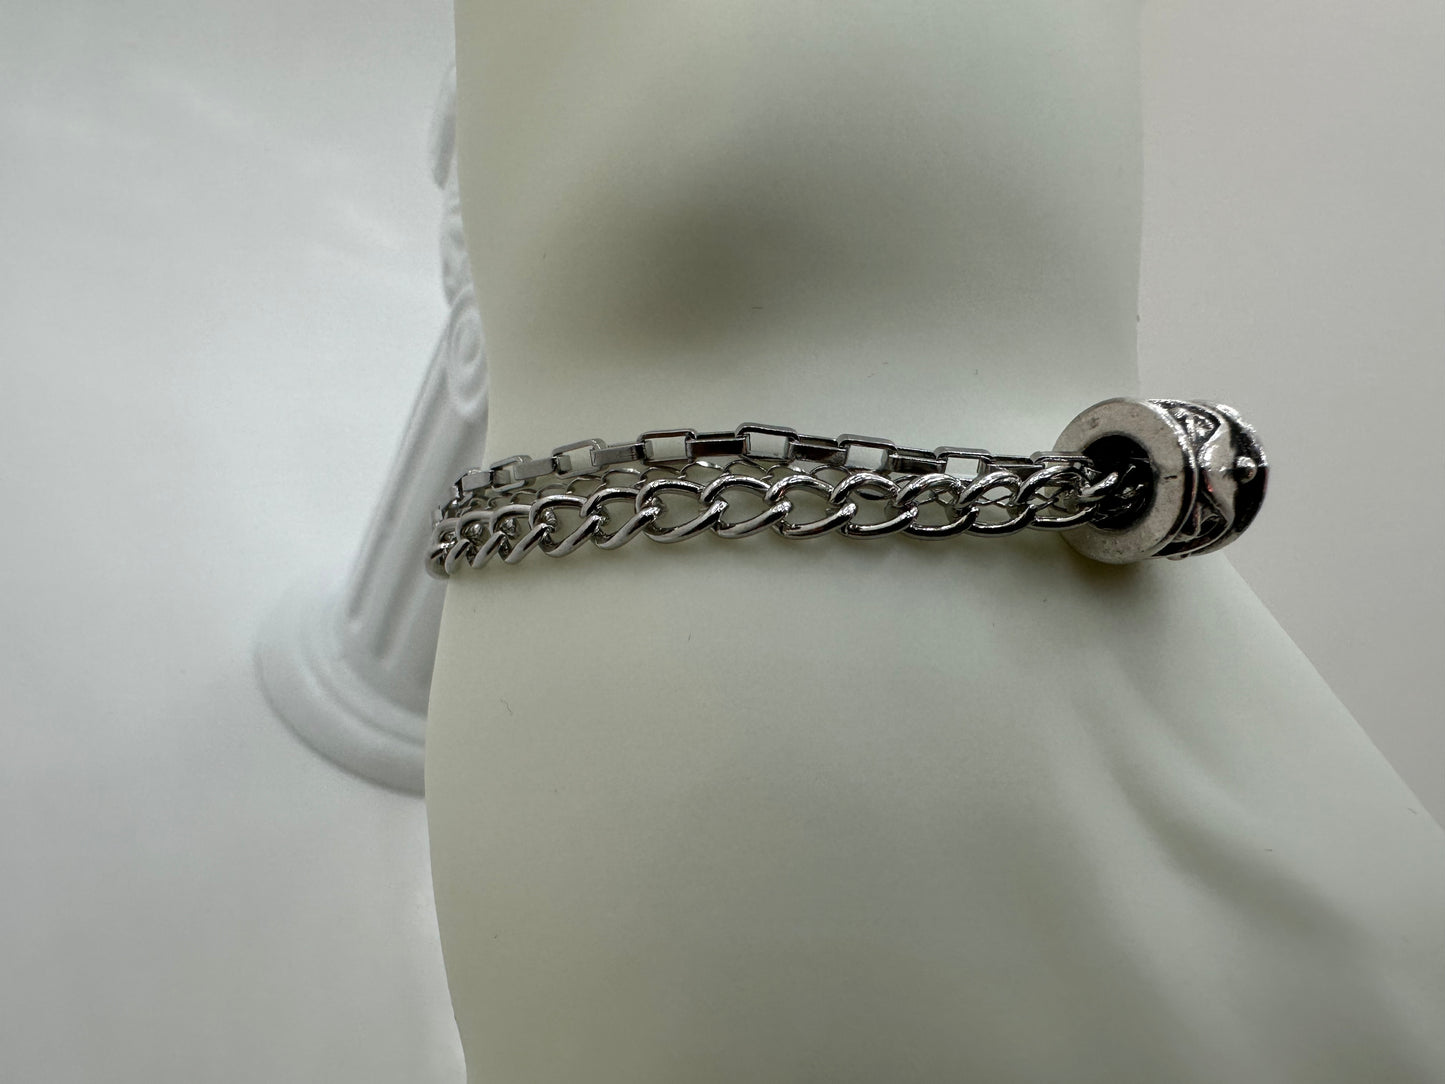 Triple Chain Bracelet